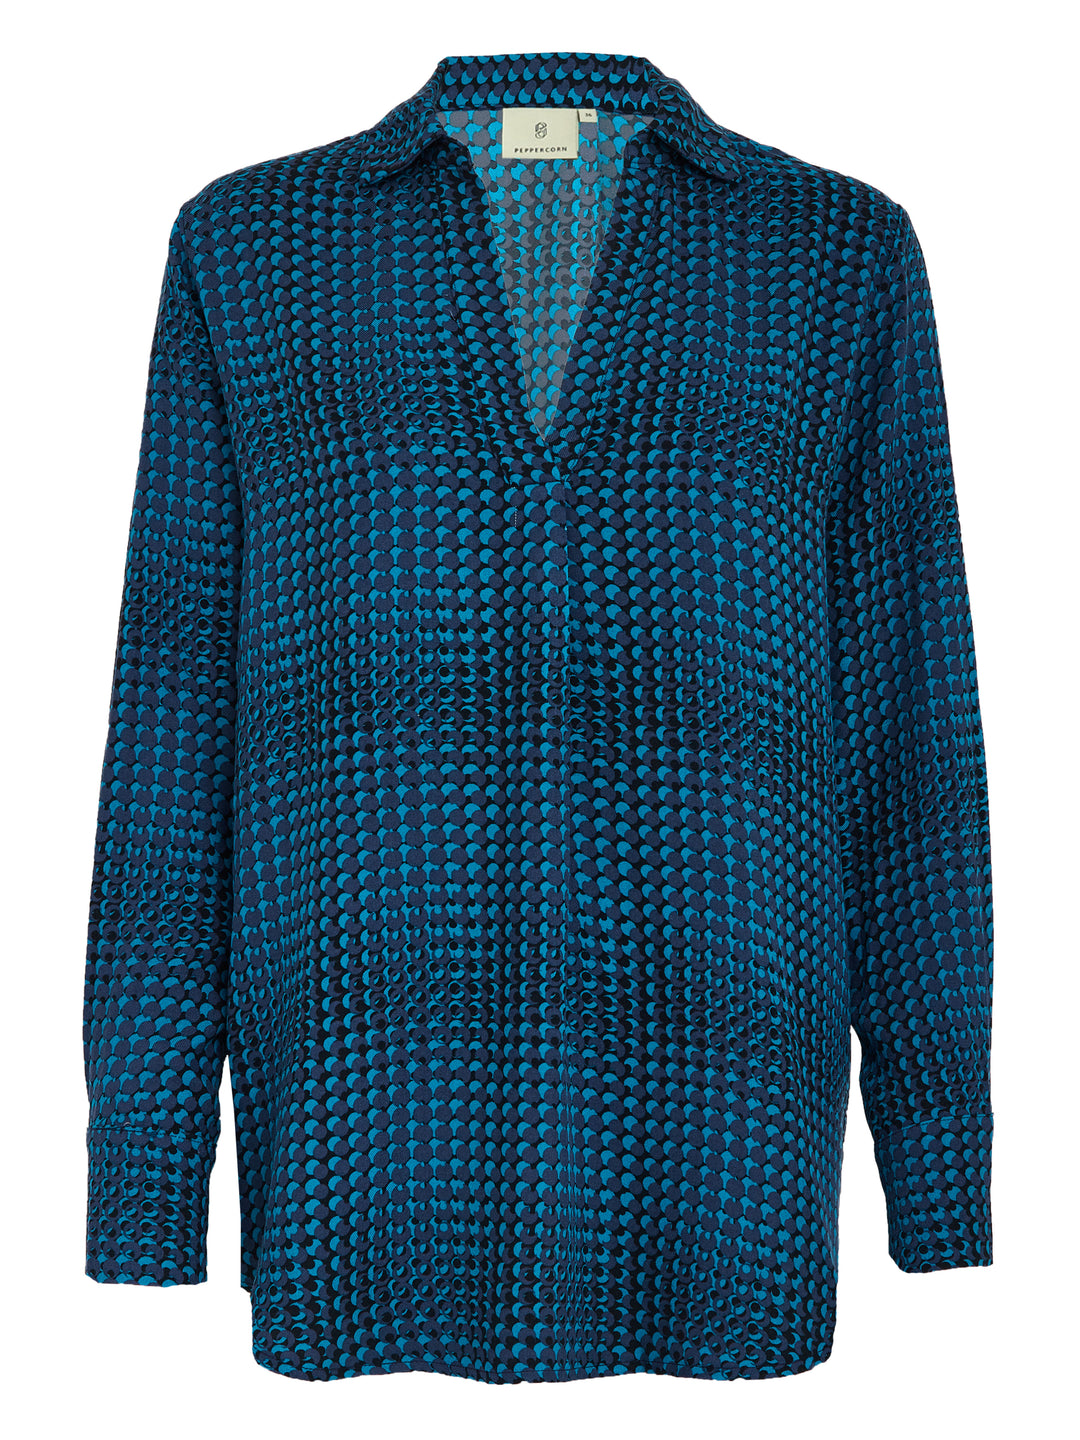 blauwe-zwarte blouse met V-hals - peppercorn - - grote maten - dameskleding - kledingwinkel - herent - leuven